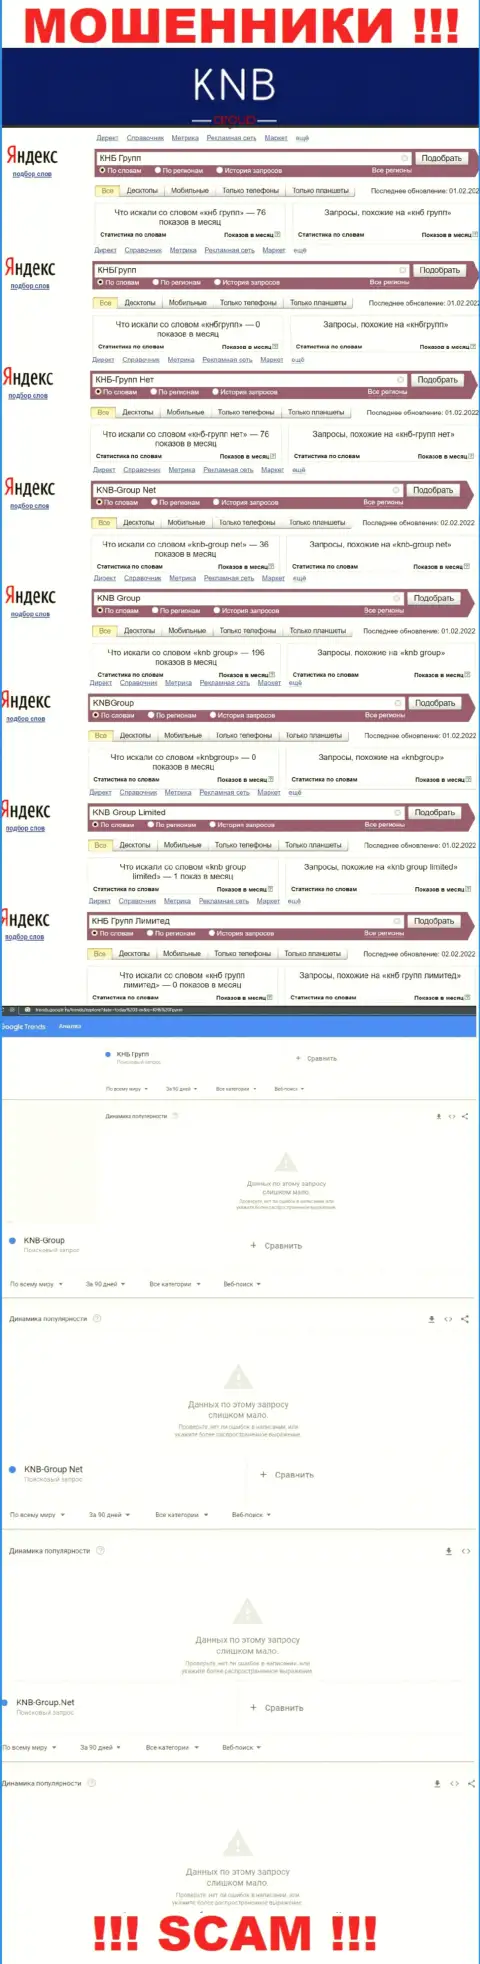 Скрин результата online-запросов по противозаконно действующей компании KNB Group